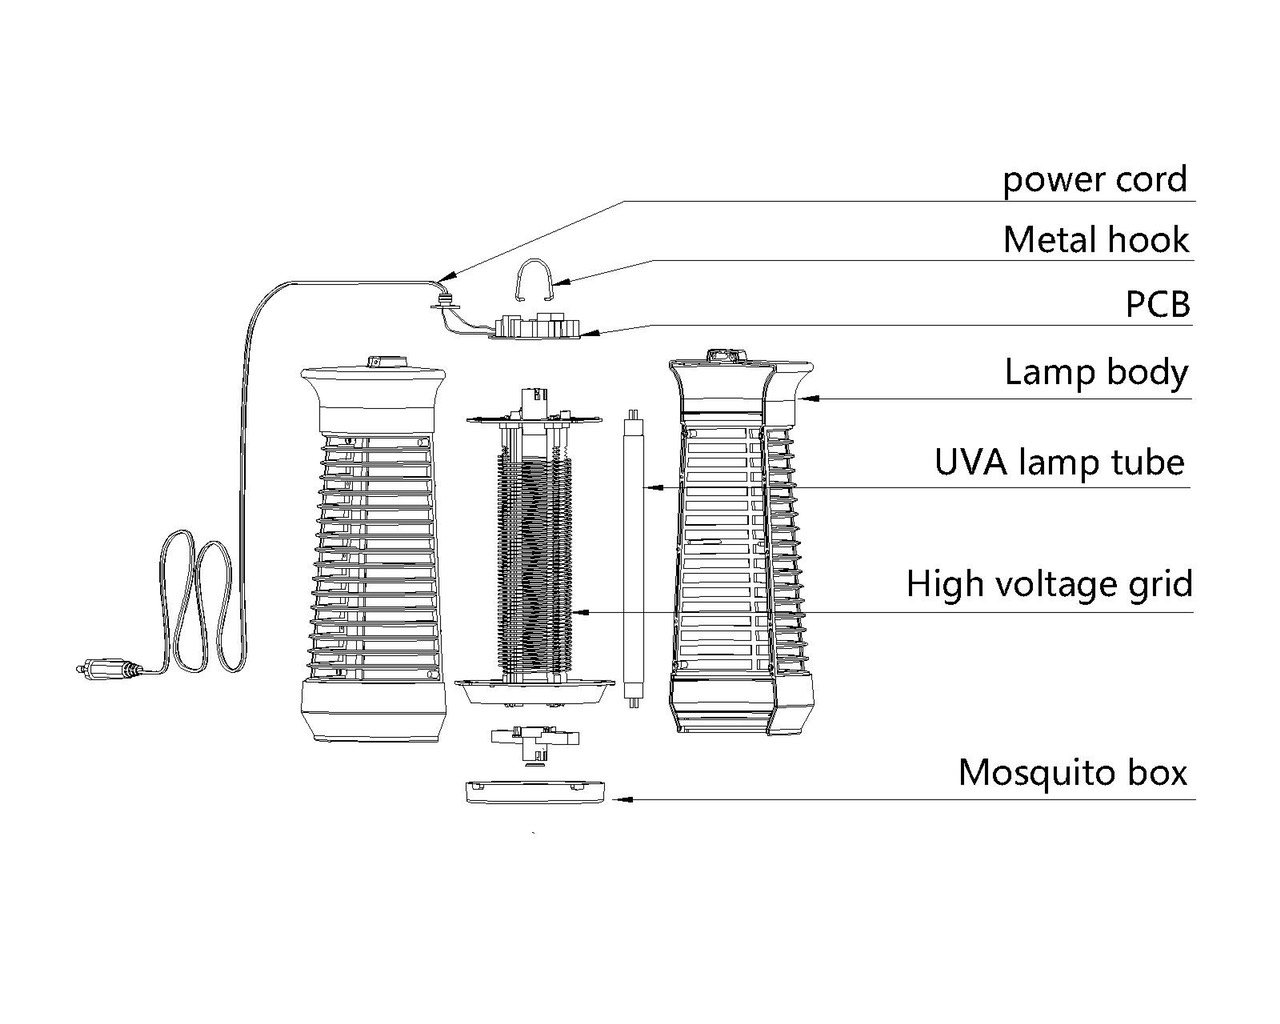 Đèn Bắt Muỗi, Máy Bắt Muỗi Thông Minh, Diệt Côn Trùng Đa Năng, Hiệu Quả. (Bug Zapper LT802) Thiết kế mới 2022